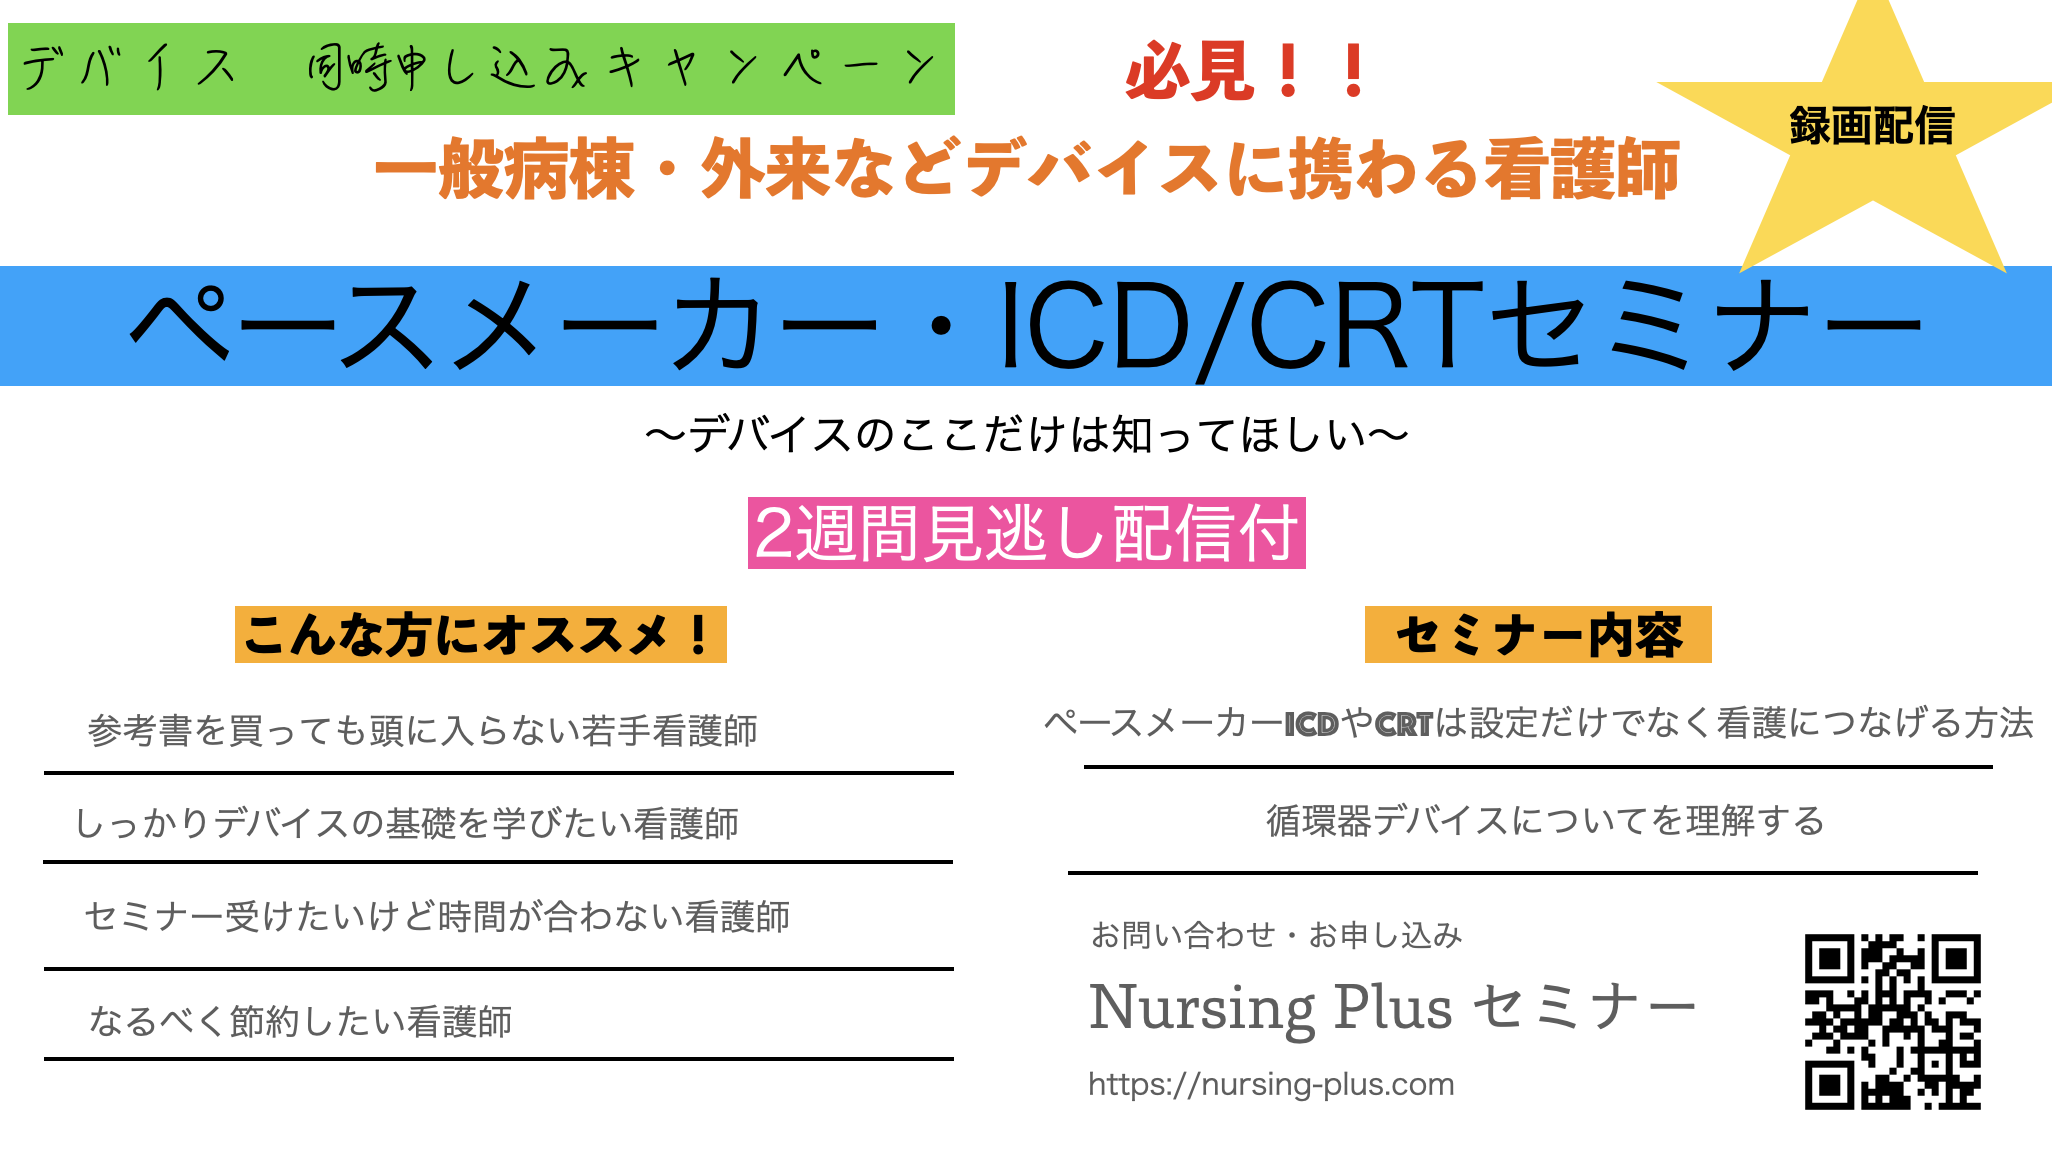 循環器デバイスキャンペーン（ペースメーカー・ICD・CRT）について！